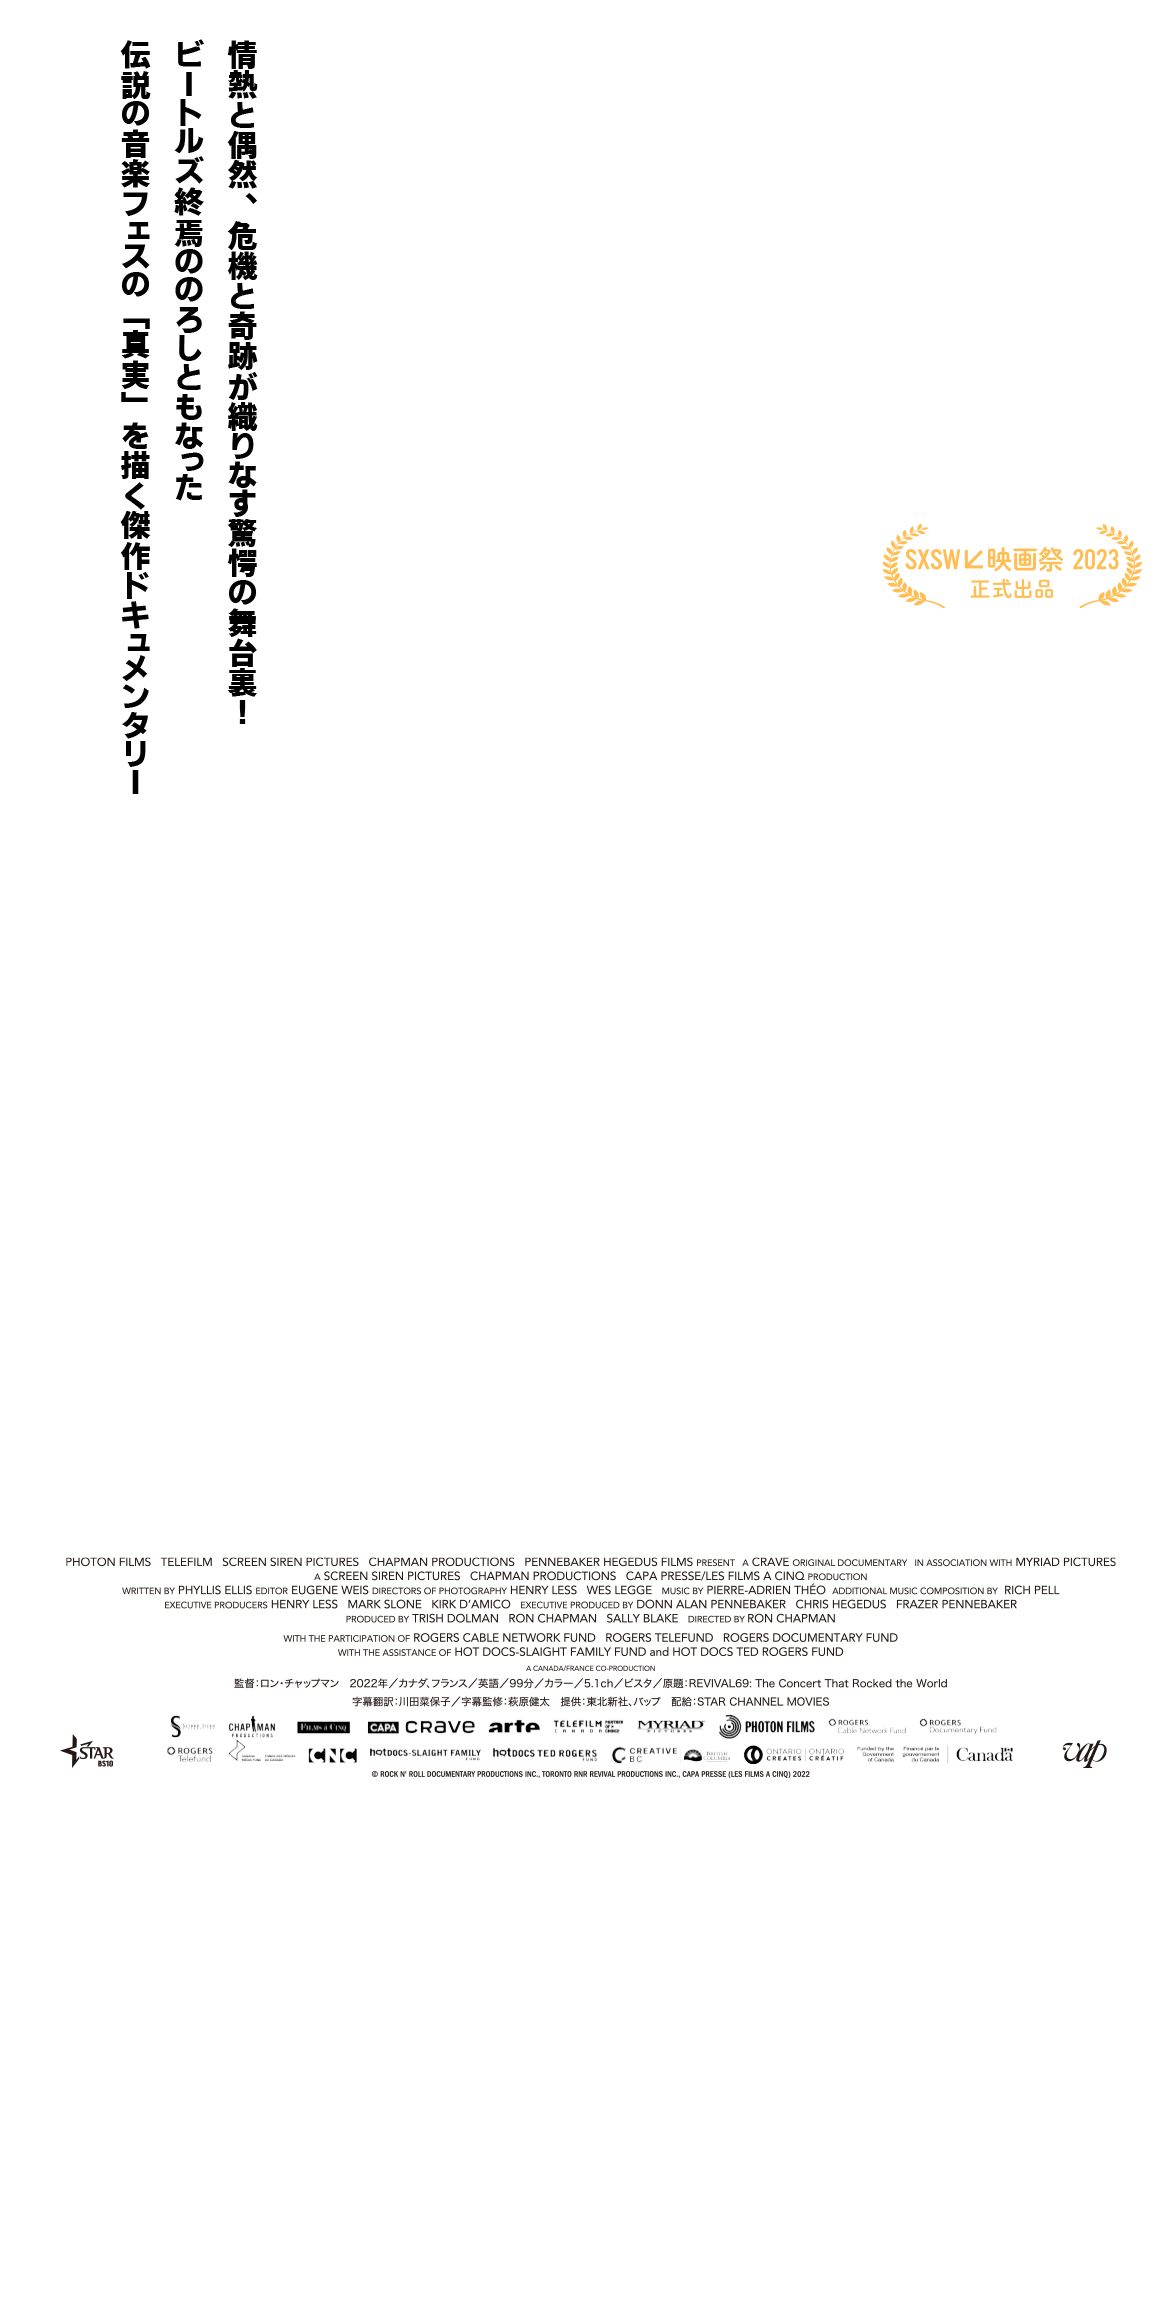 情熱と偶然、危機と奇跡が織りなす驚愕の舞台裏！　監督：ロン・チャップマン
			2022年／カナダ、フランス／英語／97分／カラー／5.1ch／ビスタ／原題：REVIVAL69: The Concert That Rocked the World
			字幕翻訳：川田菜保子　字幕監修：萩原健太　提供：東北新社、バップ　配給：STAR CHANNEL MOVIES
			revival69-movie.com
			© ROCK N' ROLL DOCUMENTARY PRODUCTIONS INC., TORONTO RNR REVIVAL PRODUCTIONS INC., CAPA PRESSE (LES FILMS A CINQ) 2022